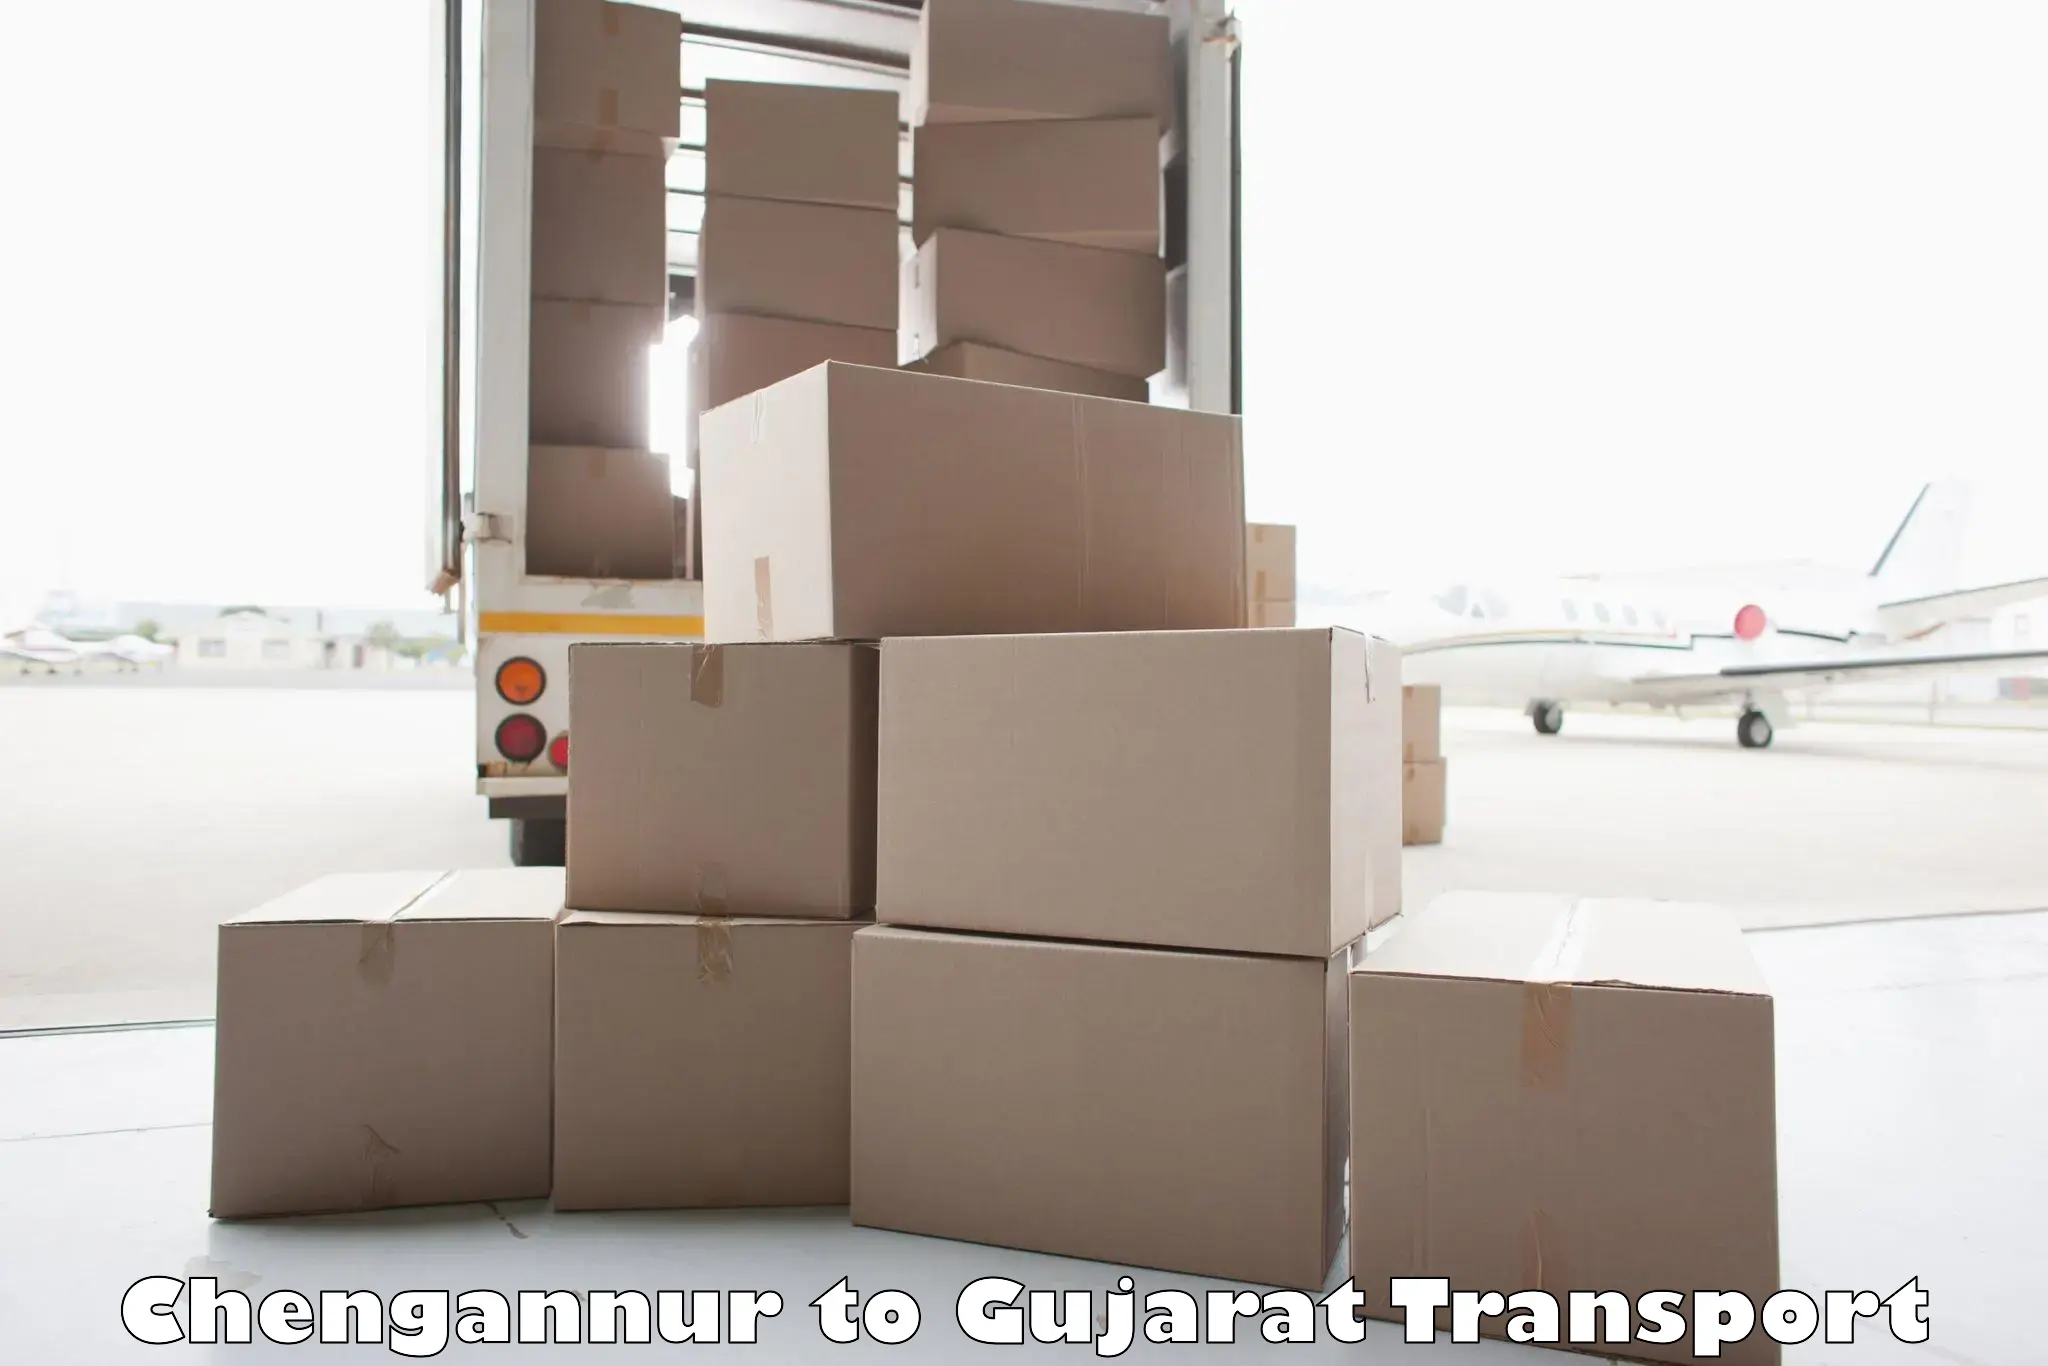 Transport in sharing Chengannur to Mahuva